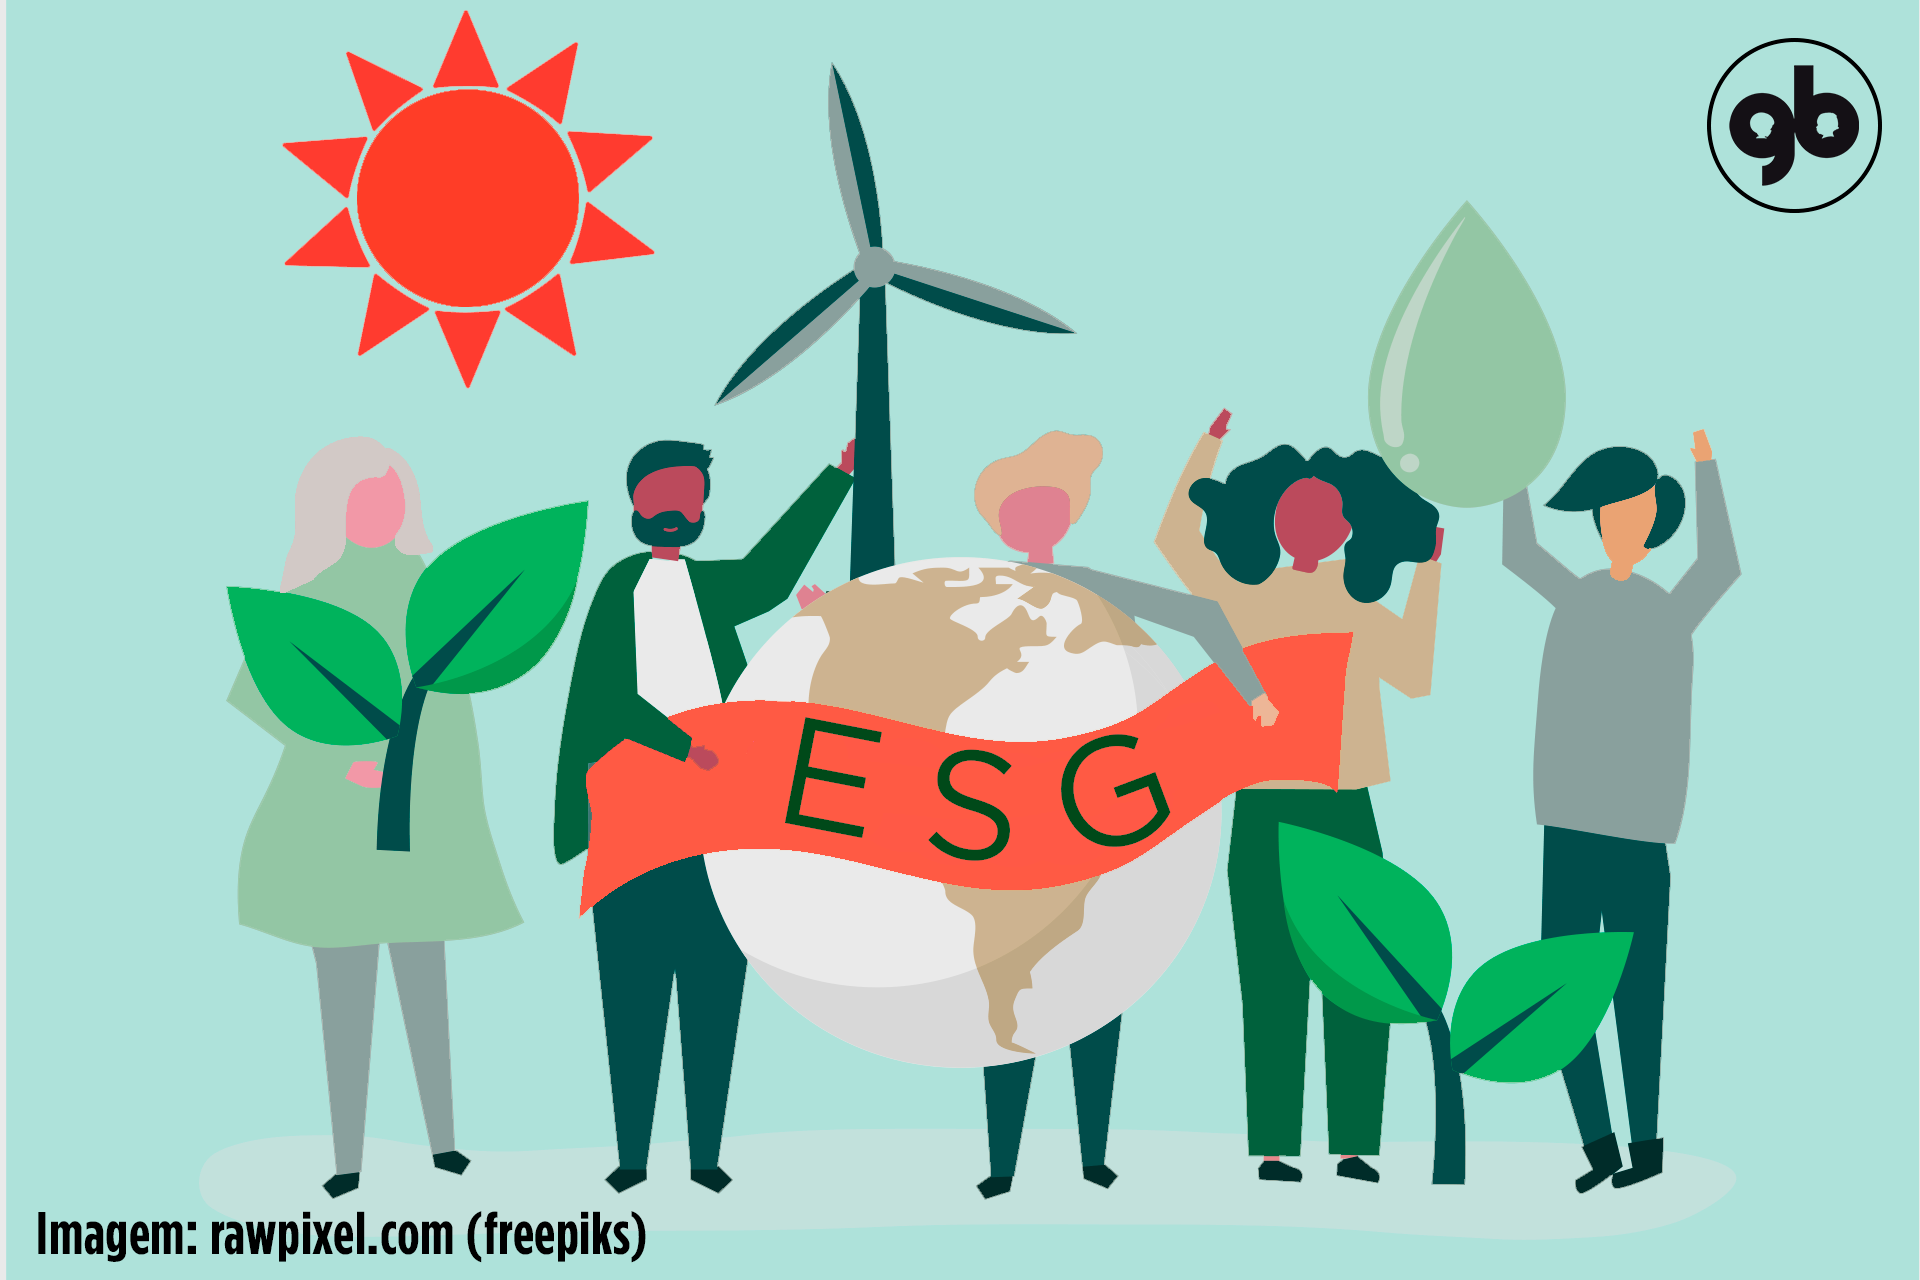 sobre fundo verde claro, ilustração de cinco pessoas diferentes que seguram cada uma um ícone que simboliza a sigla ESG